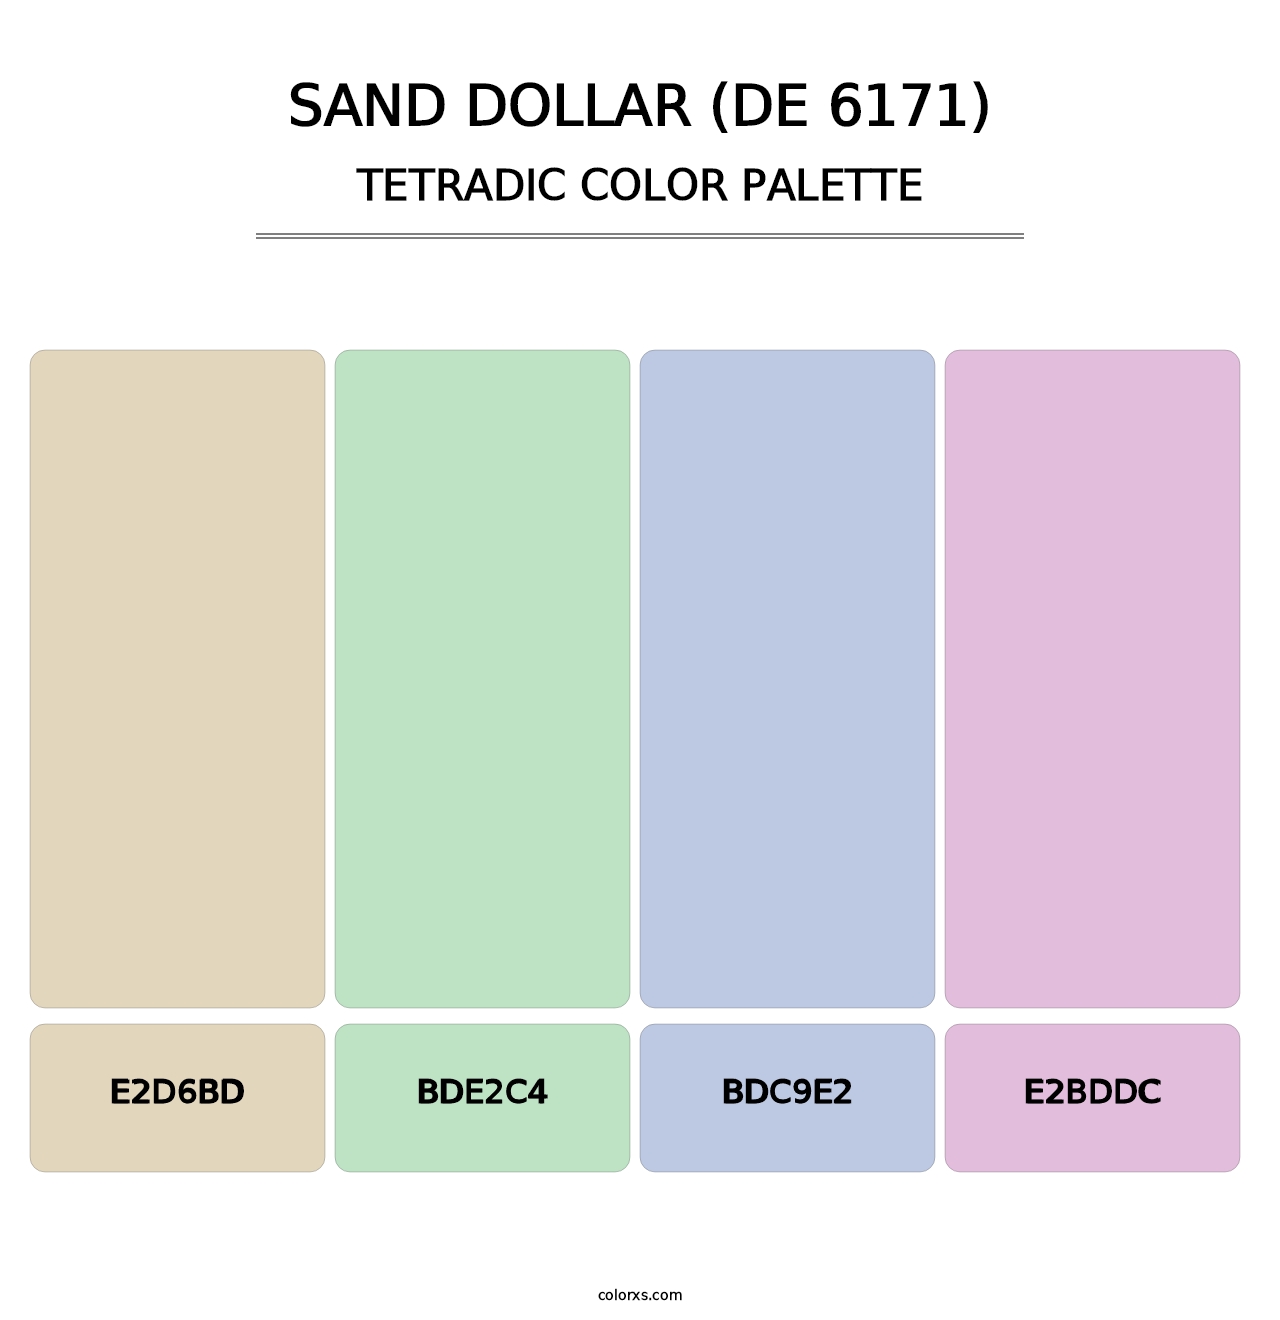 Sand Dollar (DE 6171) - Tetradic Color Palette